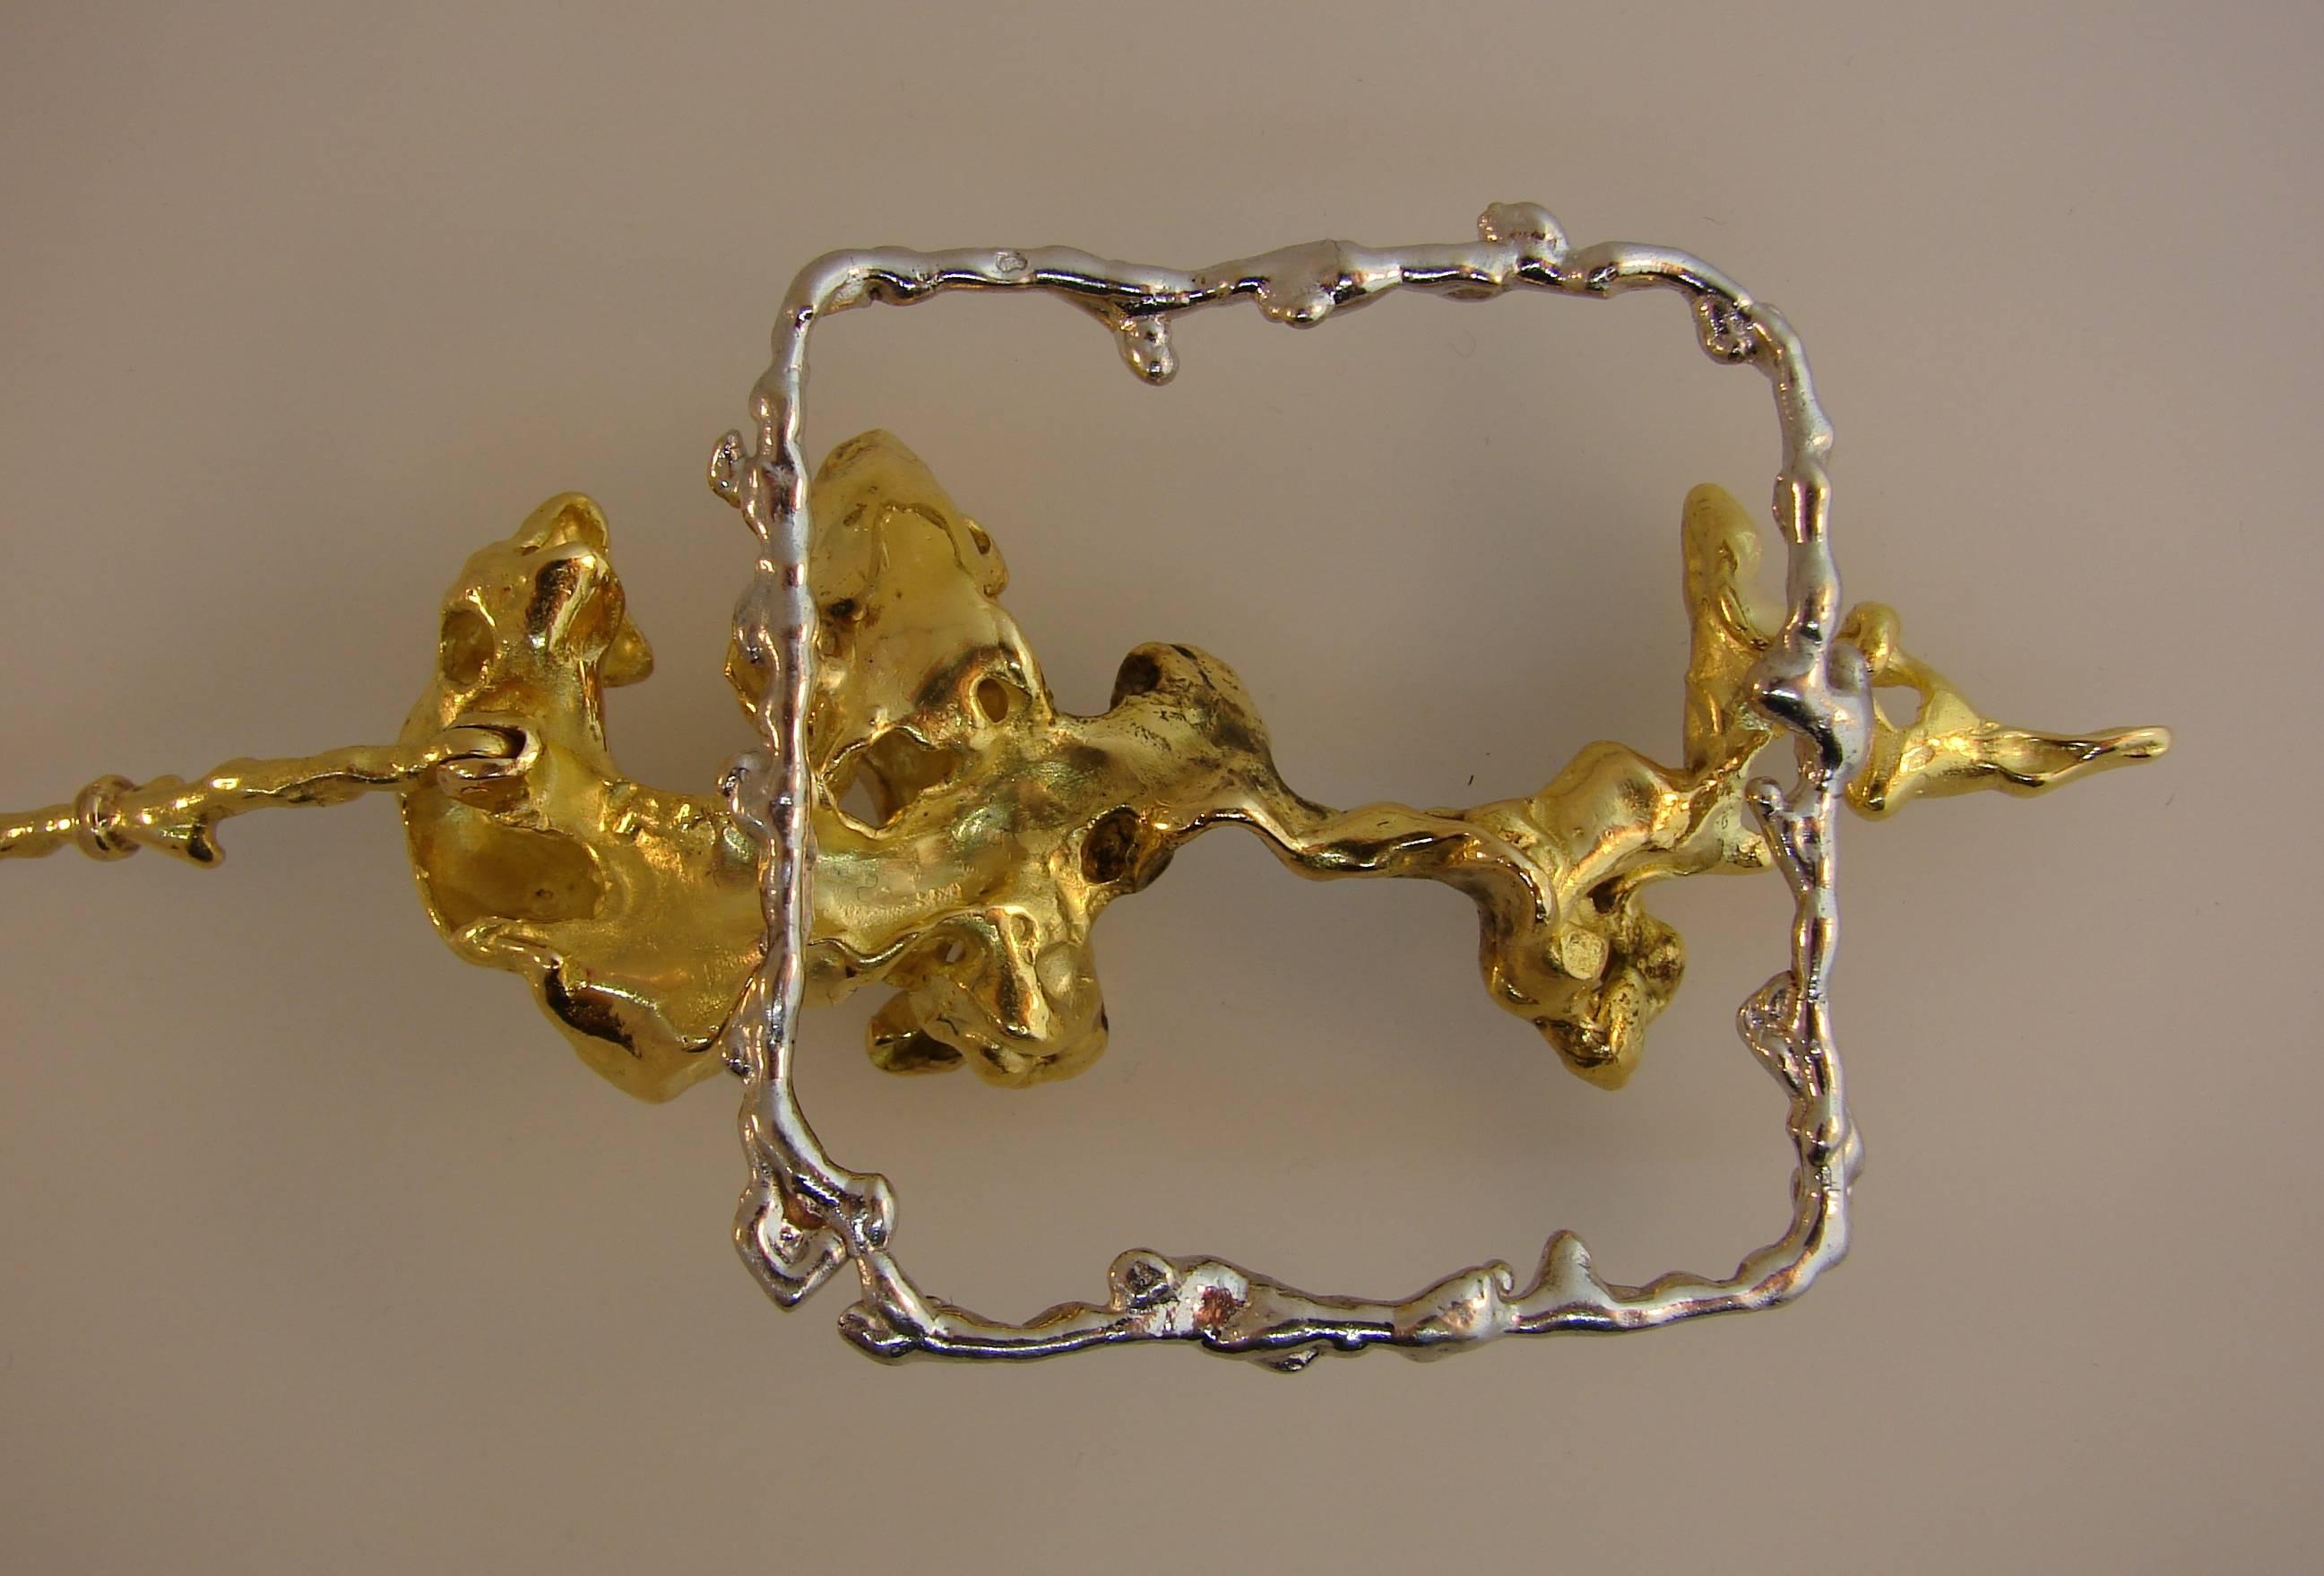 Sterle Paris Two-Tone Gold Pendant Necklace, 1950s For Sale 3